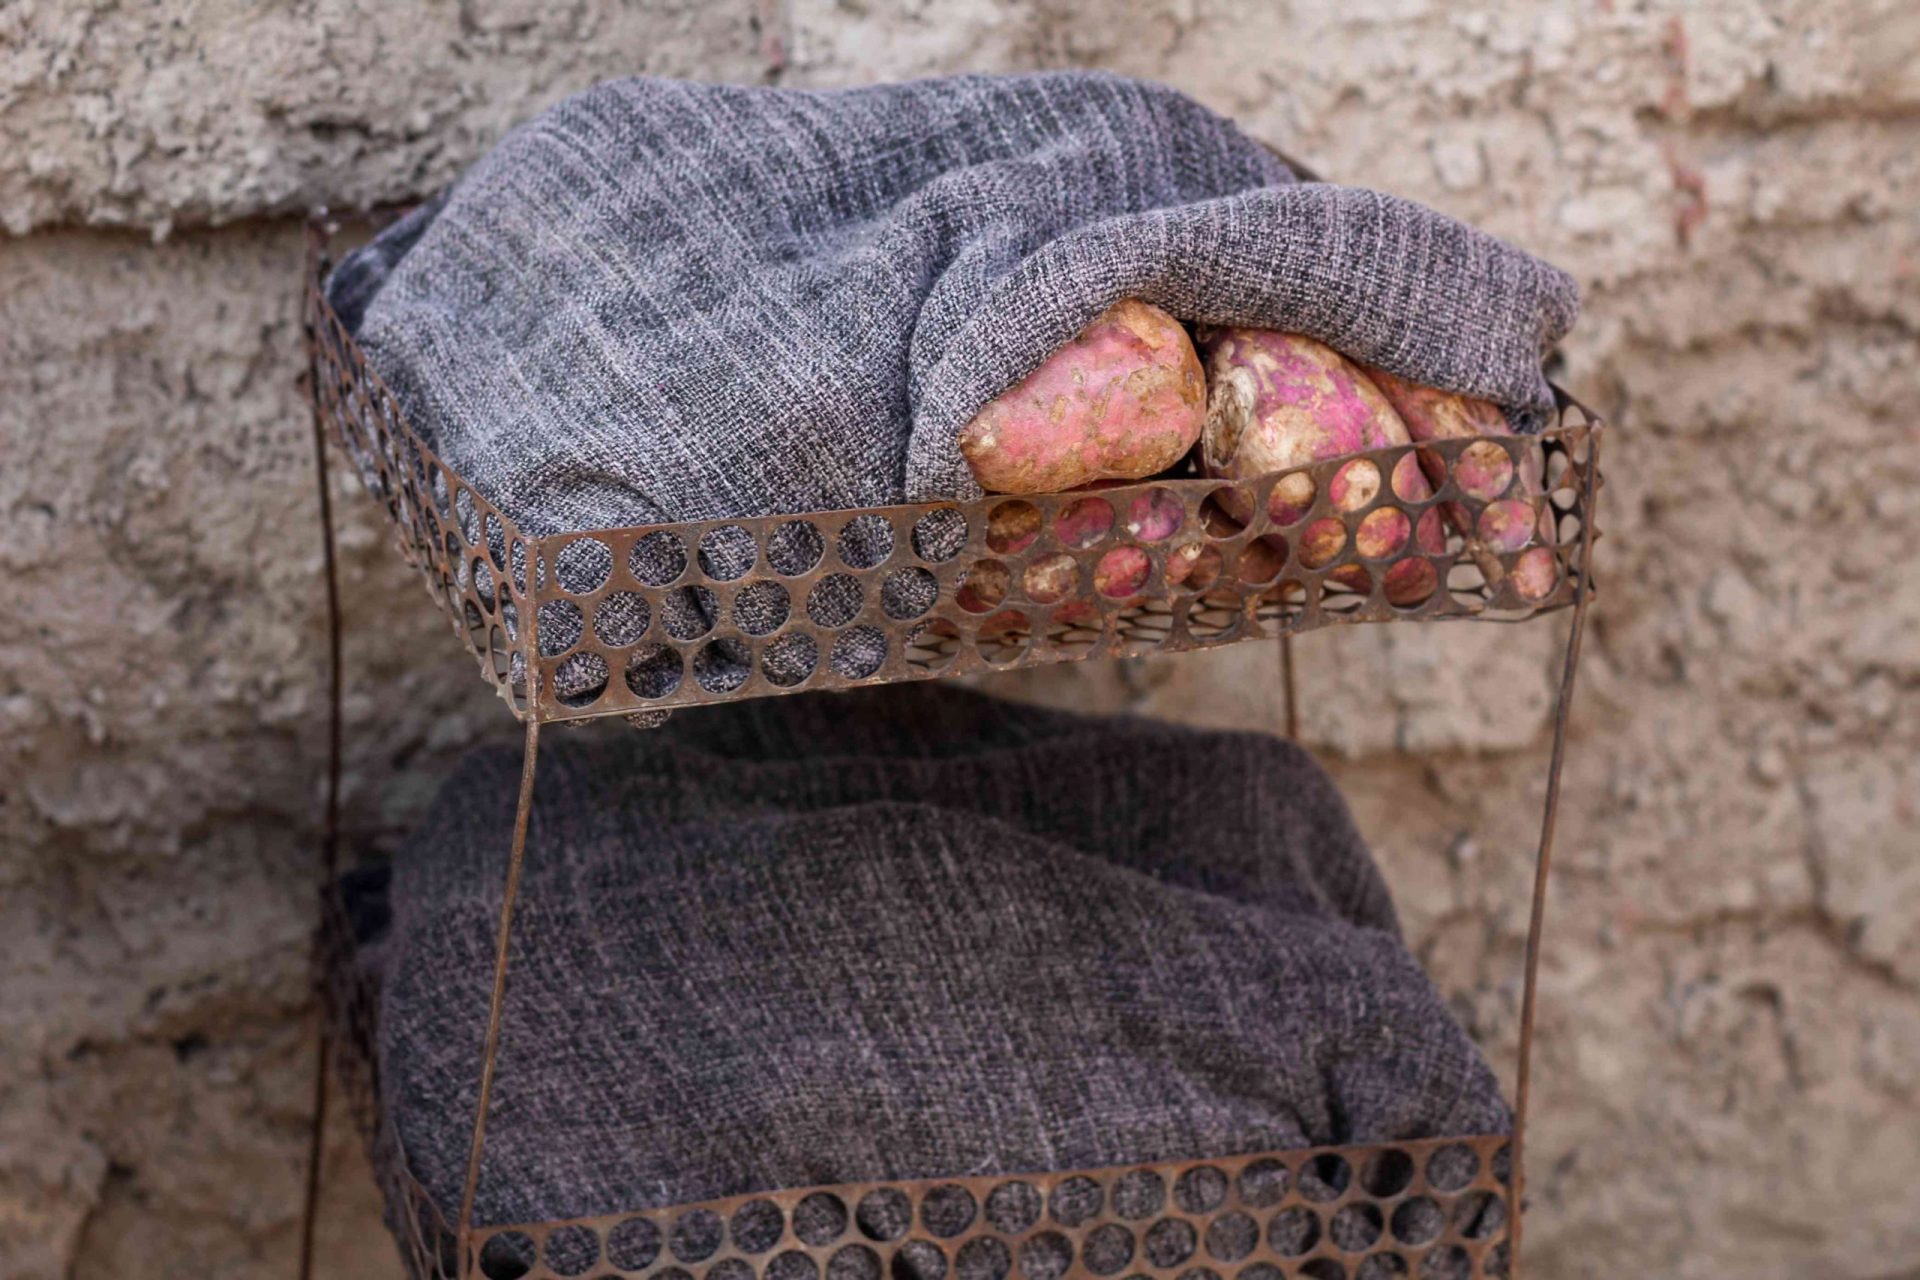 batatas almacenadas y curadas bajo una tela pesada en el exterior, cerca de un muro de piedra